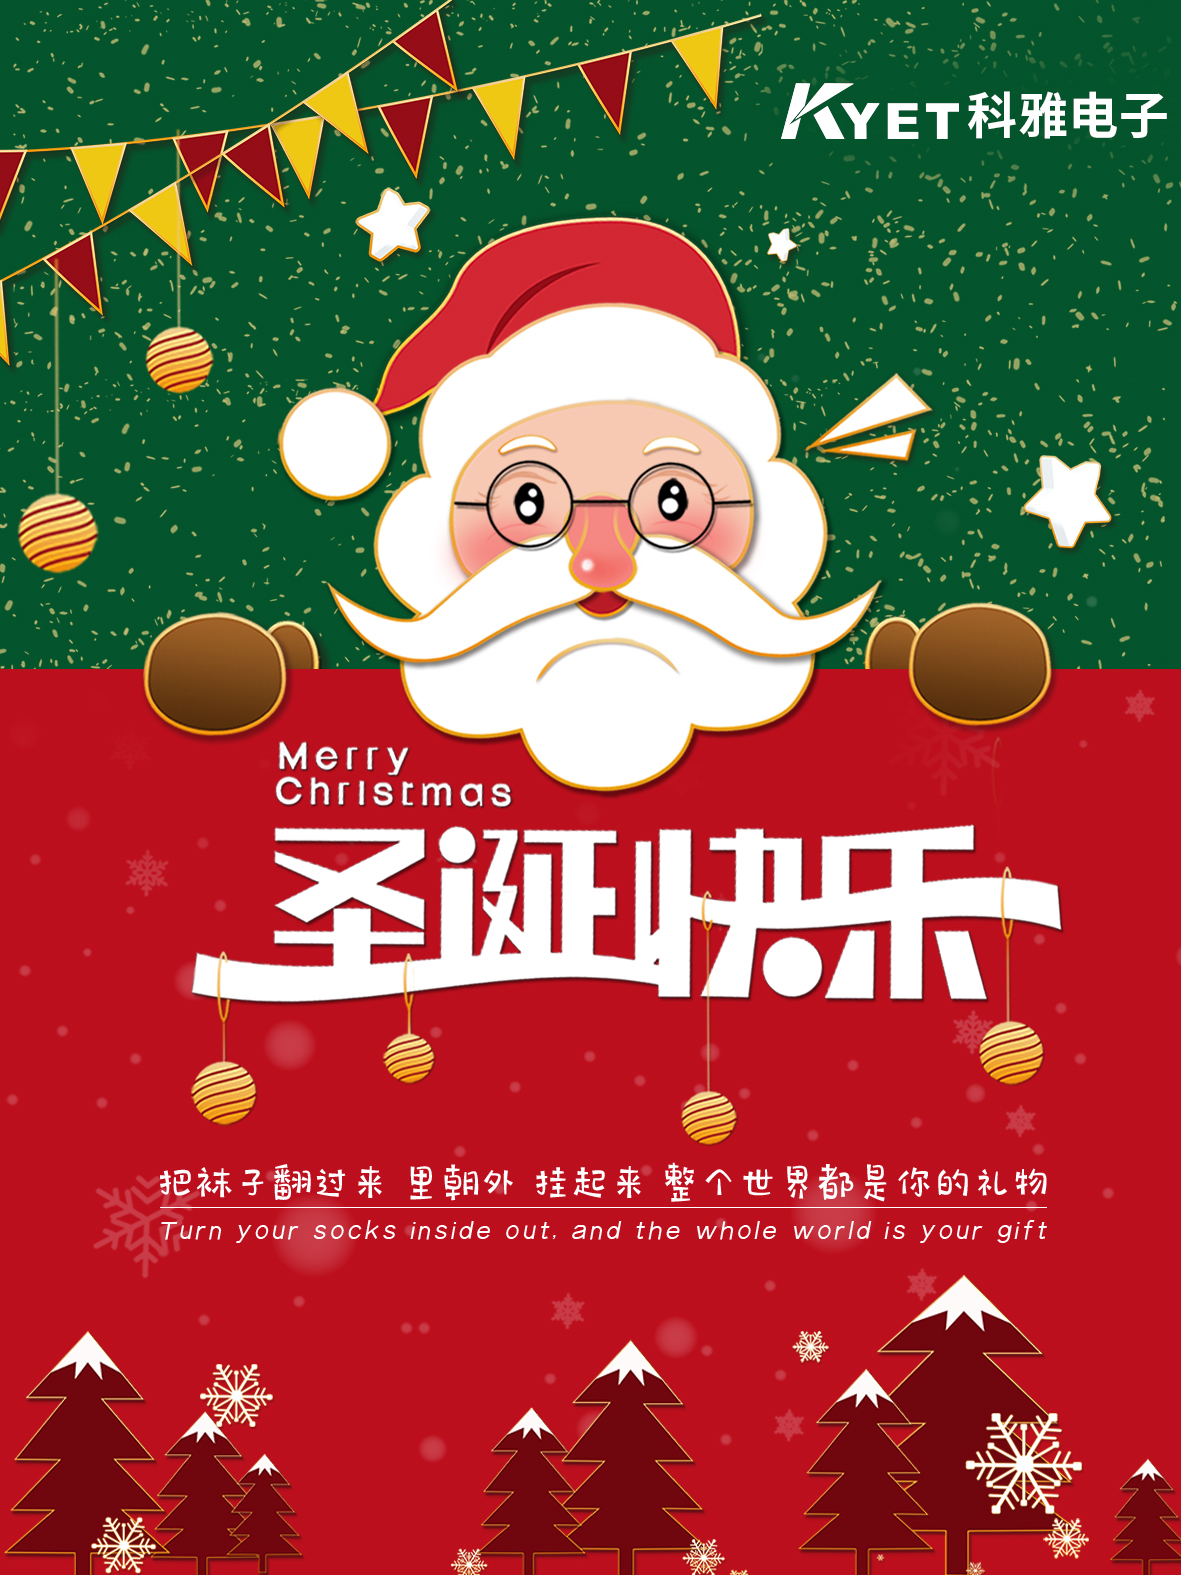 东莞市科雅电子科技有限公司祝您圣诞快乐！